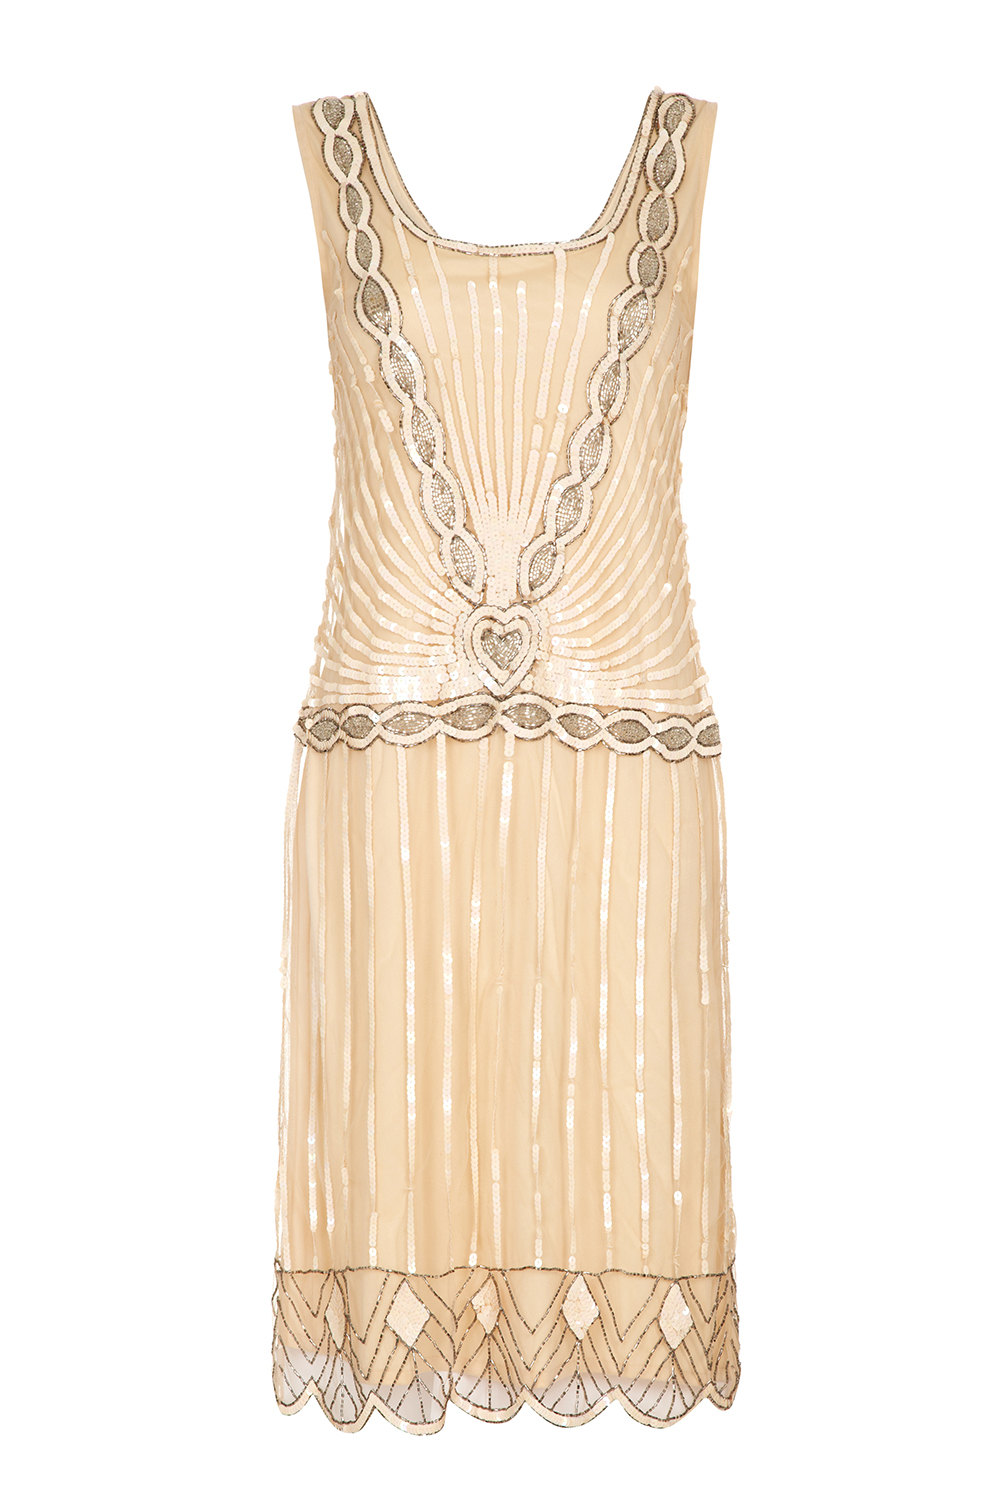 Gatsby Bridesmaid Dresses - Charleston Blush from Gatsby Lady on Etsy